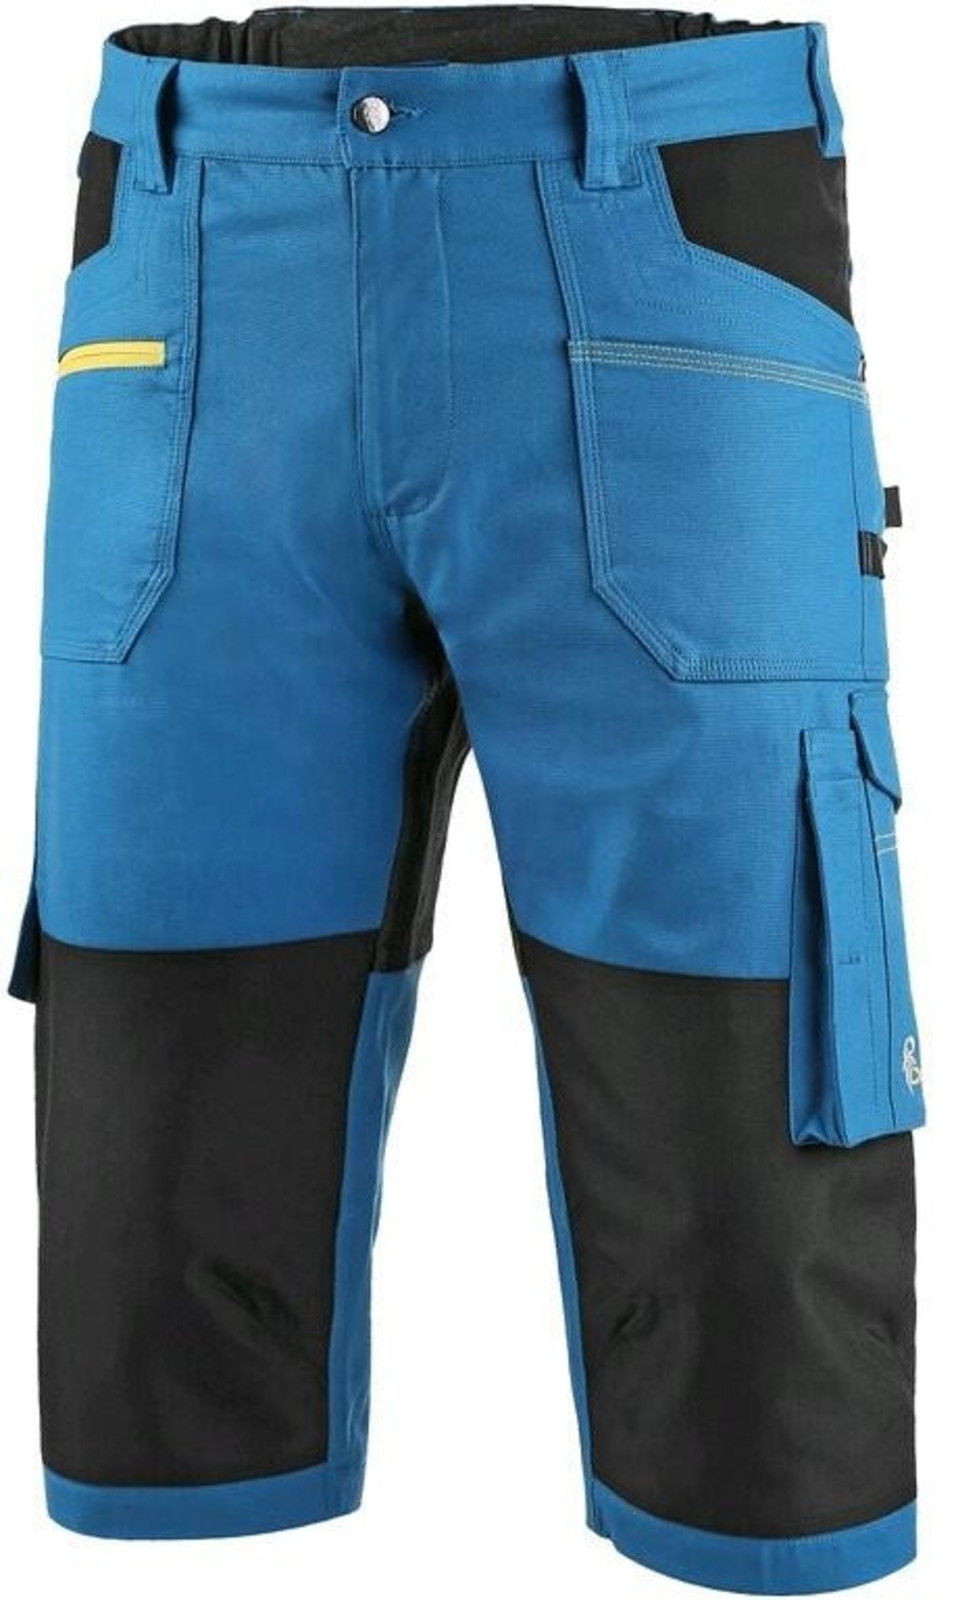 Pánske strečové montérkové 3/4 nohavice CXS Stretch - veľkosť: 52, farba: modrá/čierna